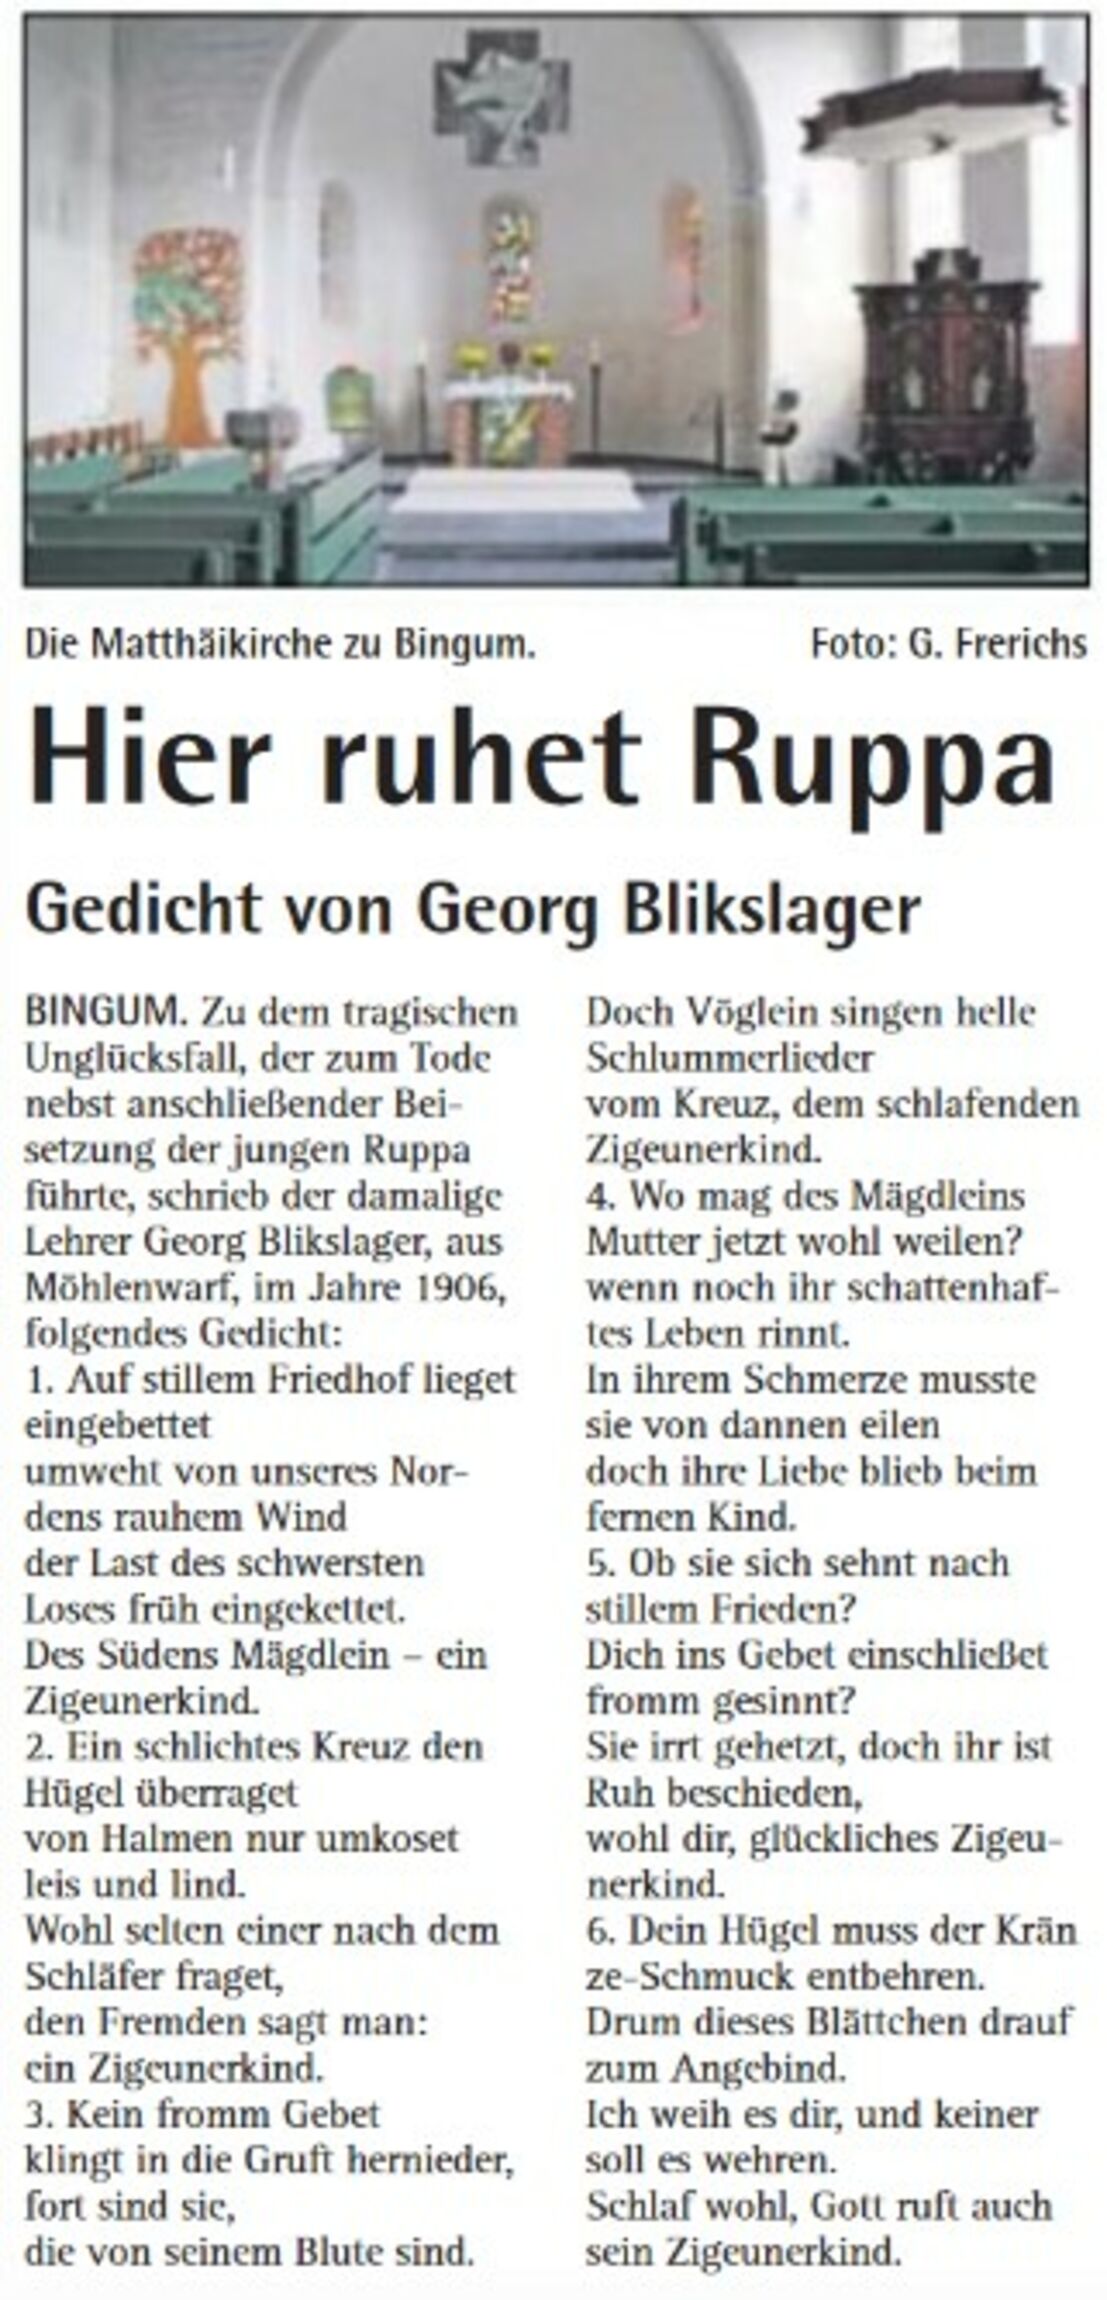 Hier ruhet Ruppa - Gedicht von Georg Blikslager